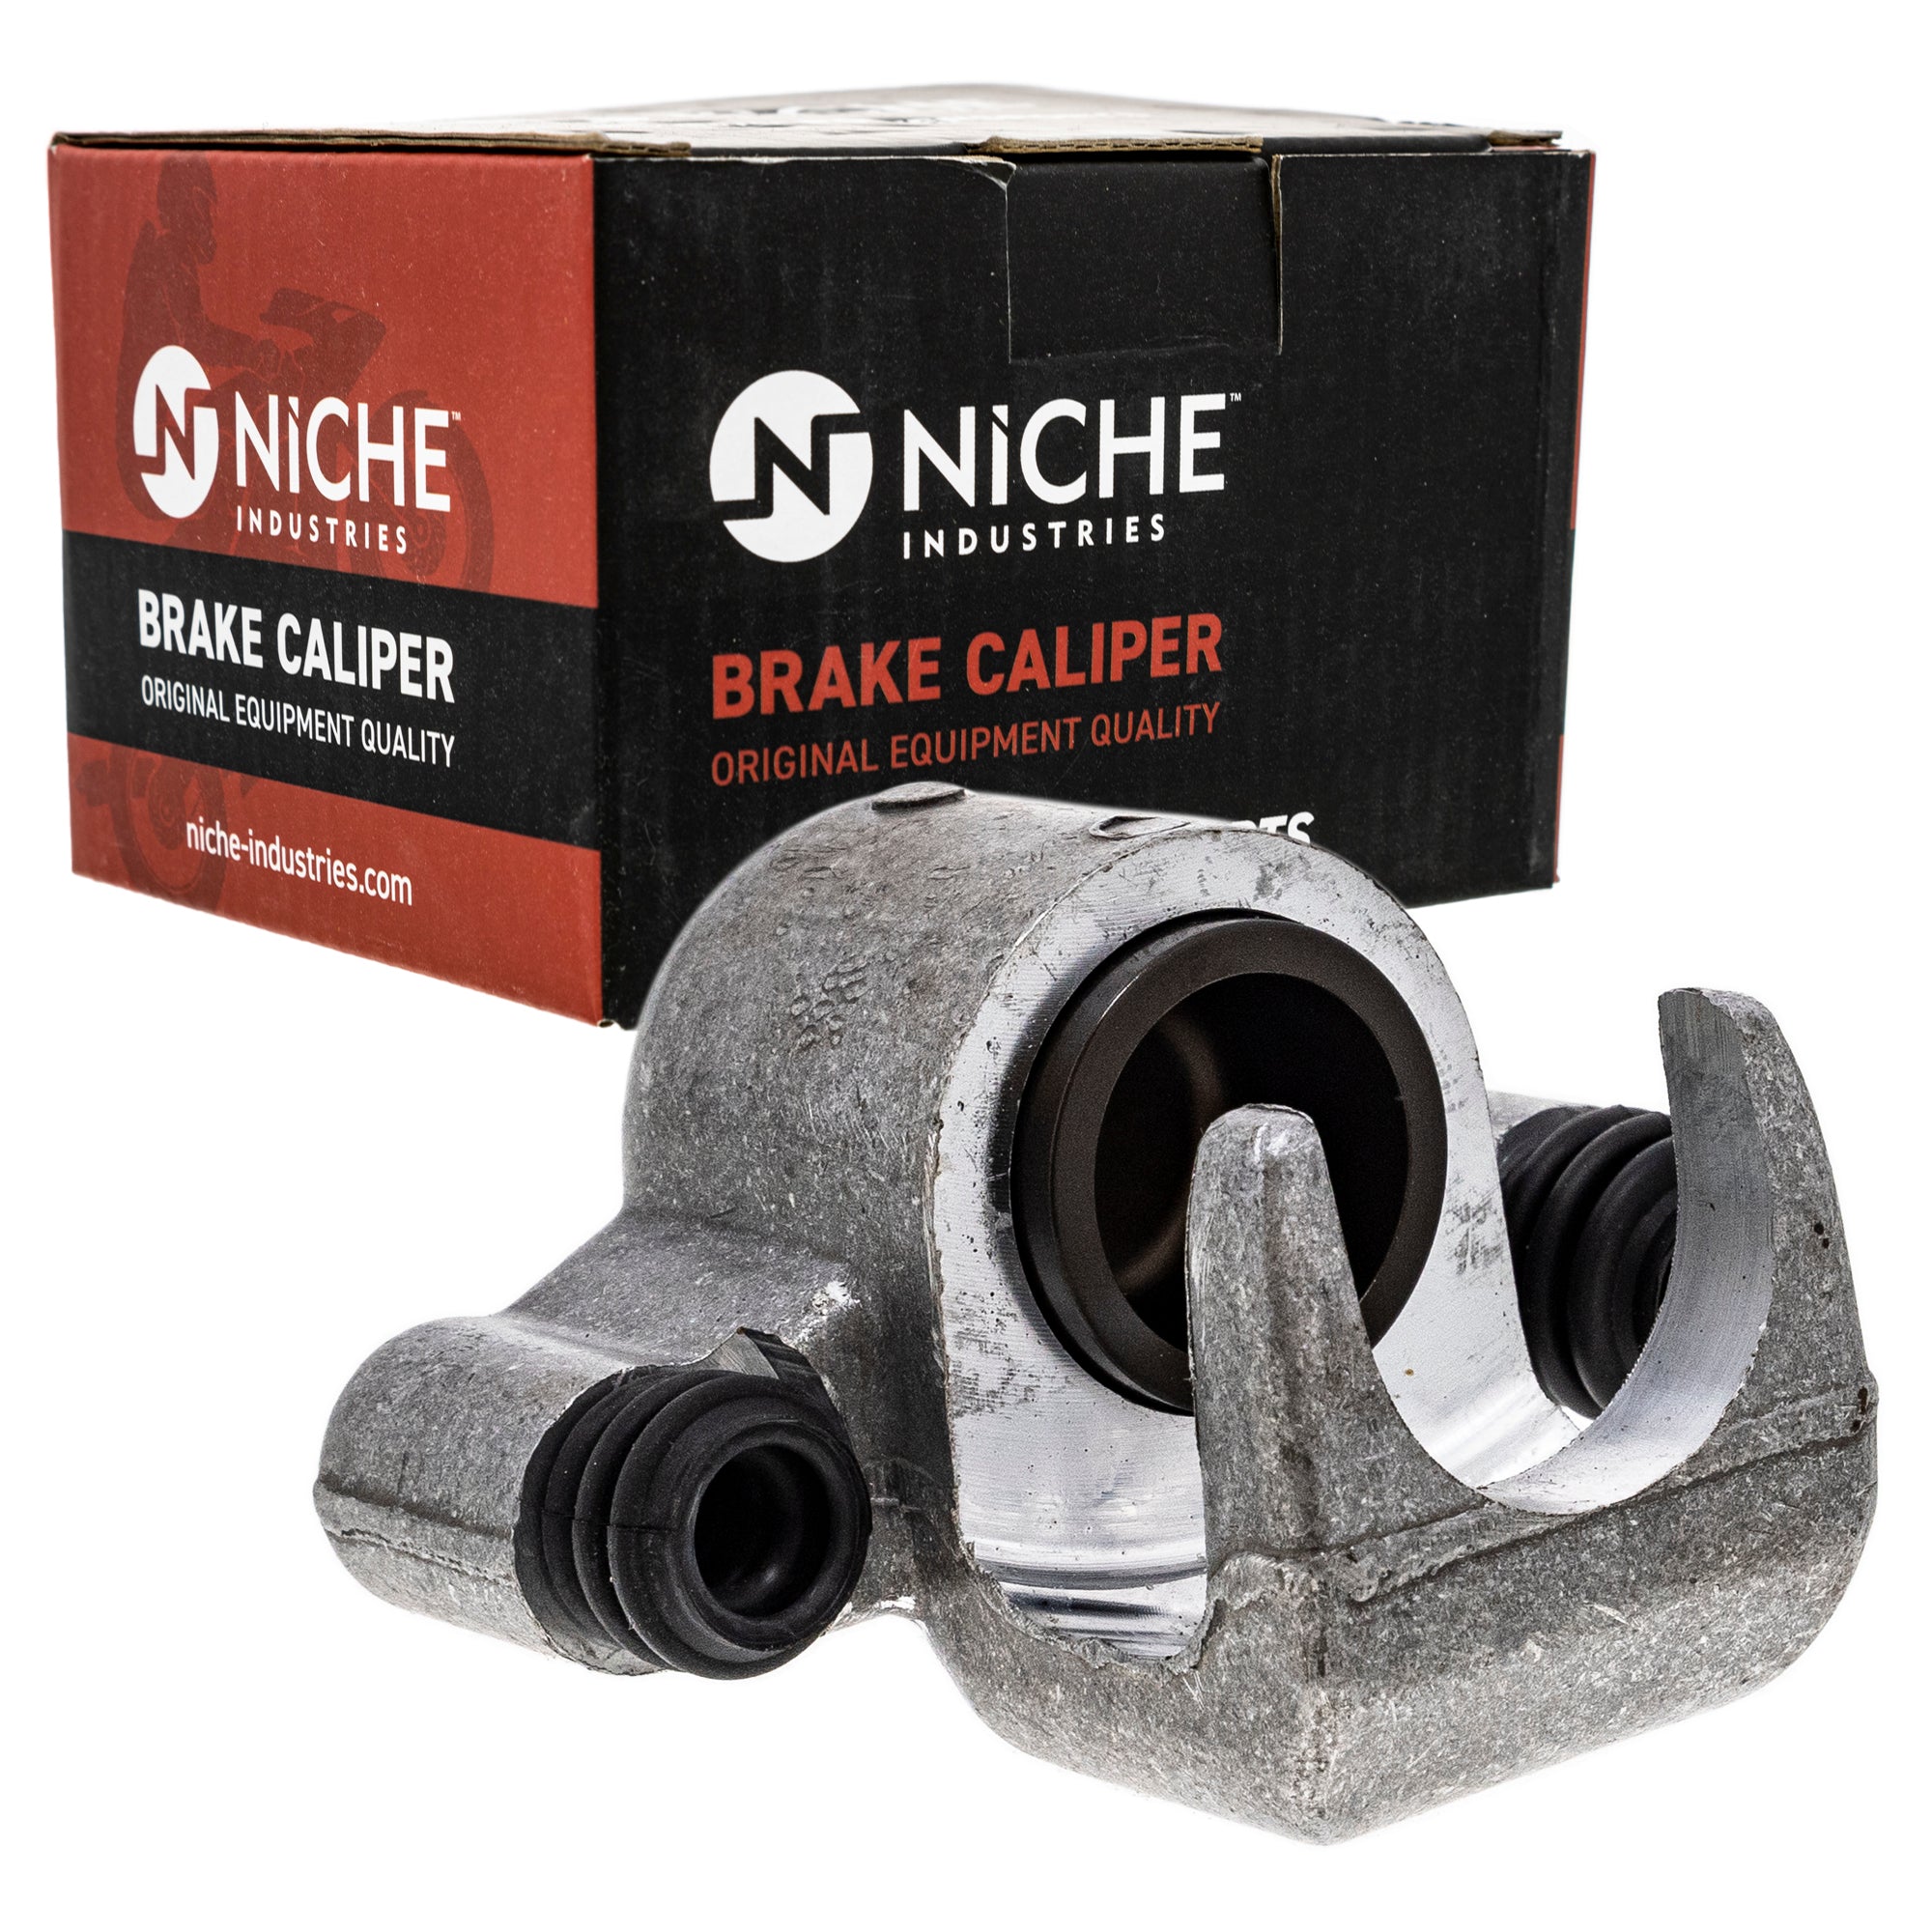 NICHE MK1001030 Brake Caliper Kit